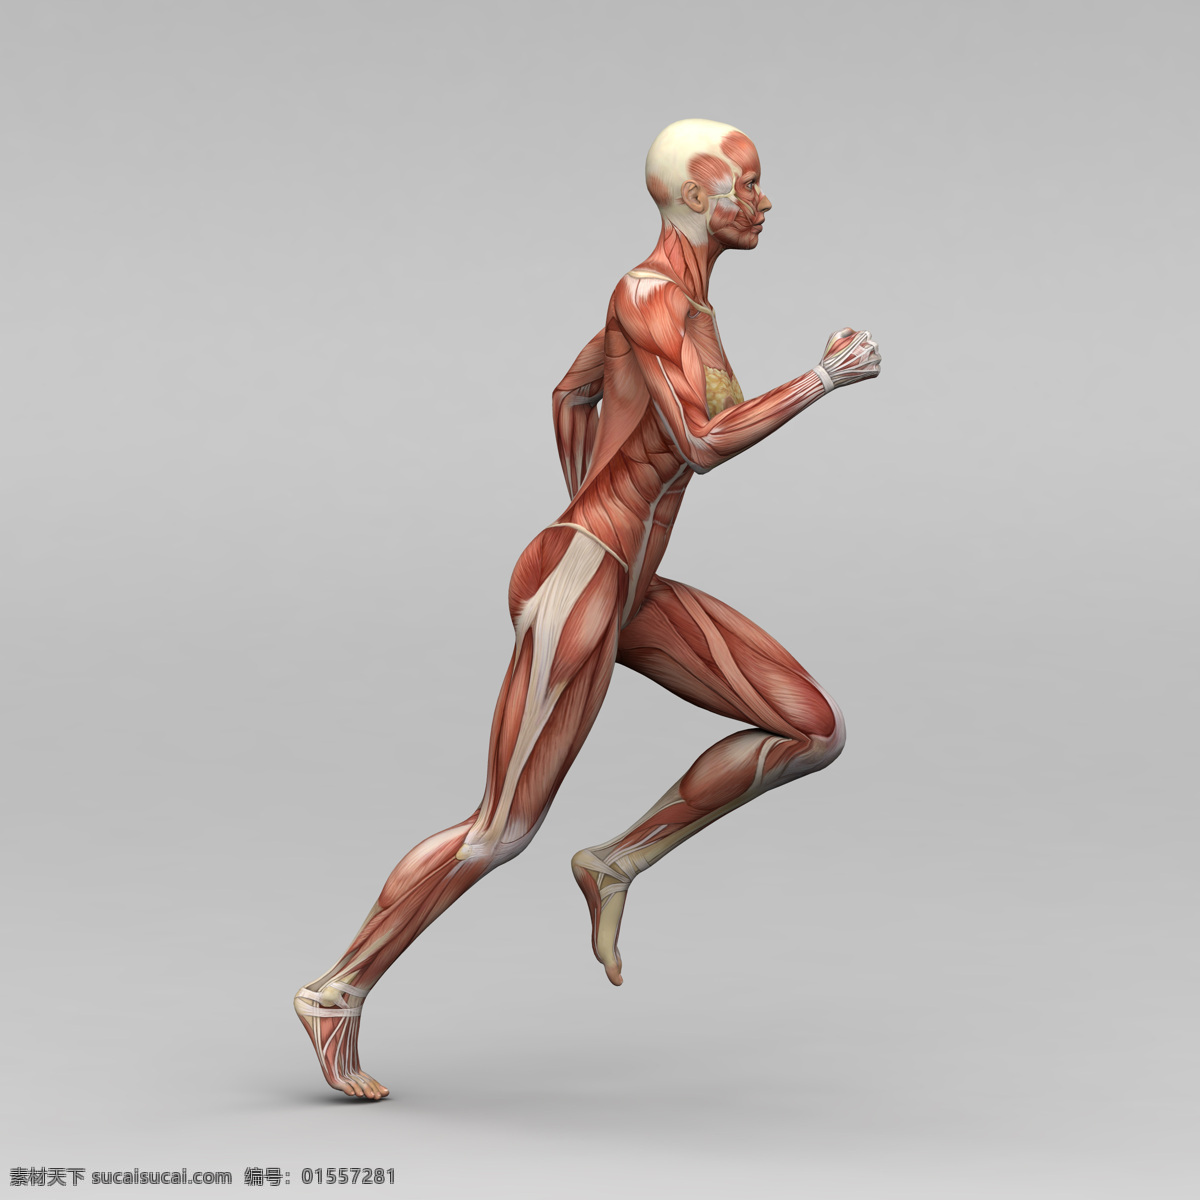 跑步 女人 人体 肌肉 组织 素描画 女性 人体肌肉器官 肌肉结构 人体解剖学 人体器官 人体器官图 人物图片